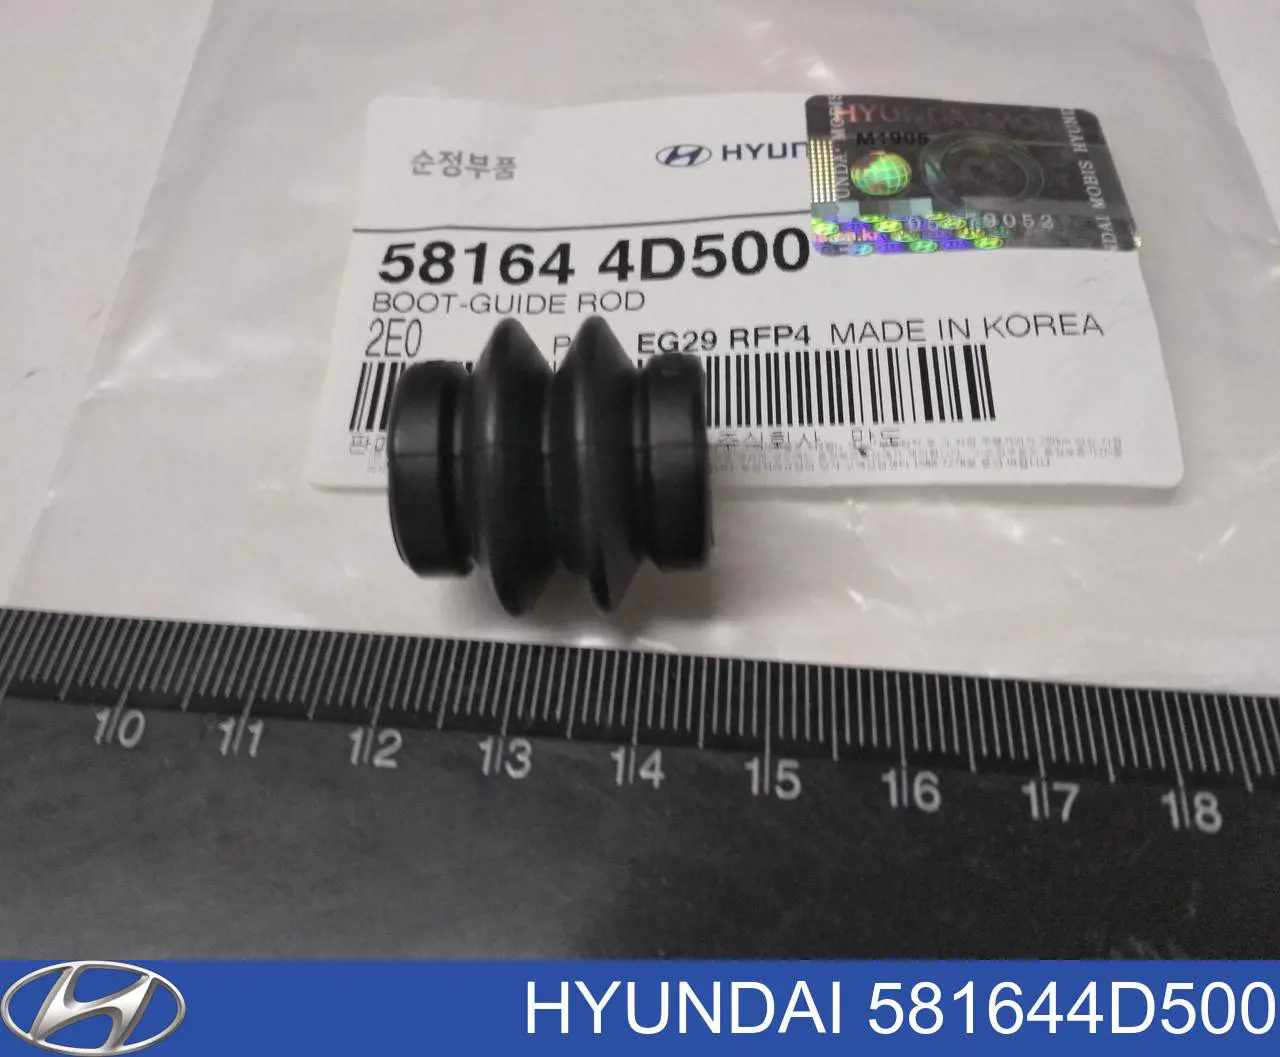 Пыльник направляющей суппорта тормозного заднего Hyundai/Kia 581644D500